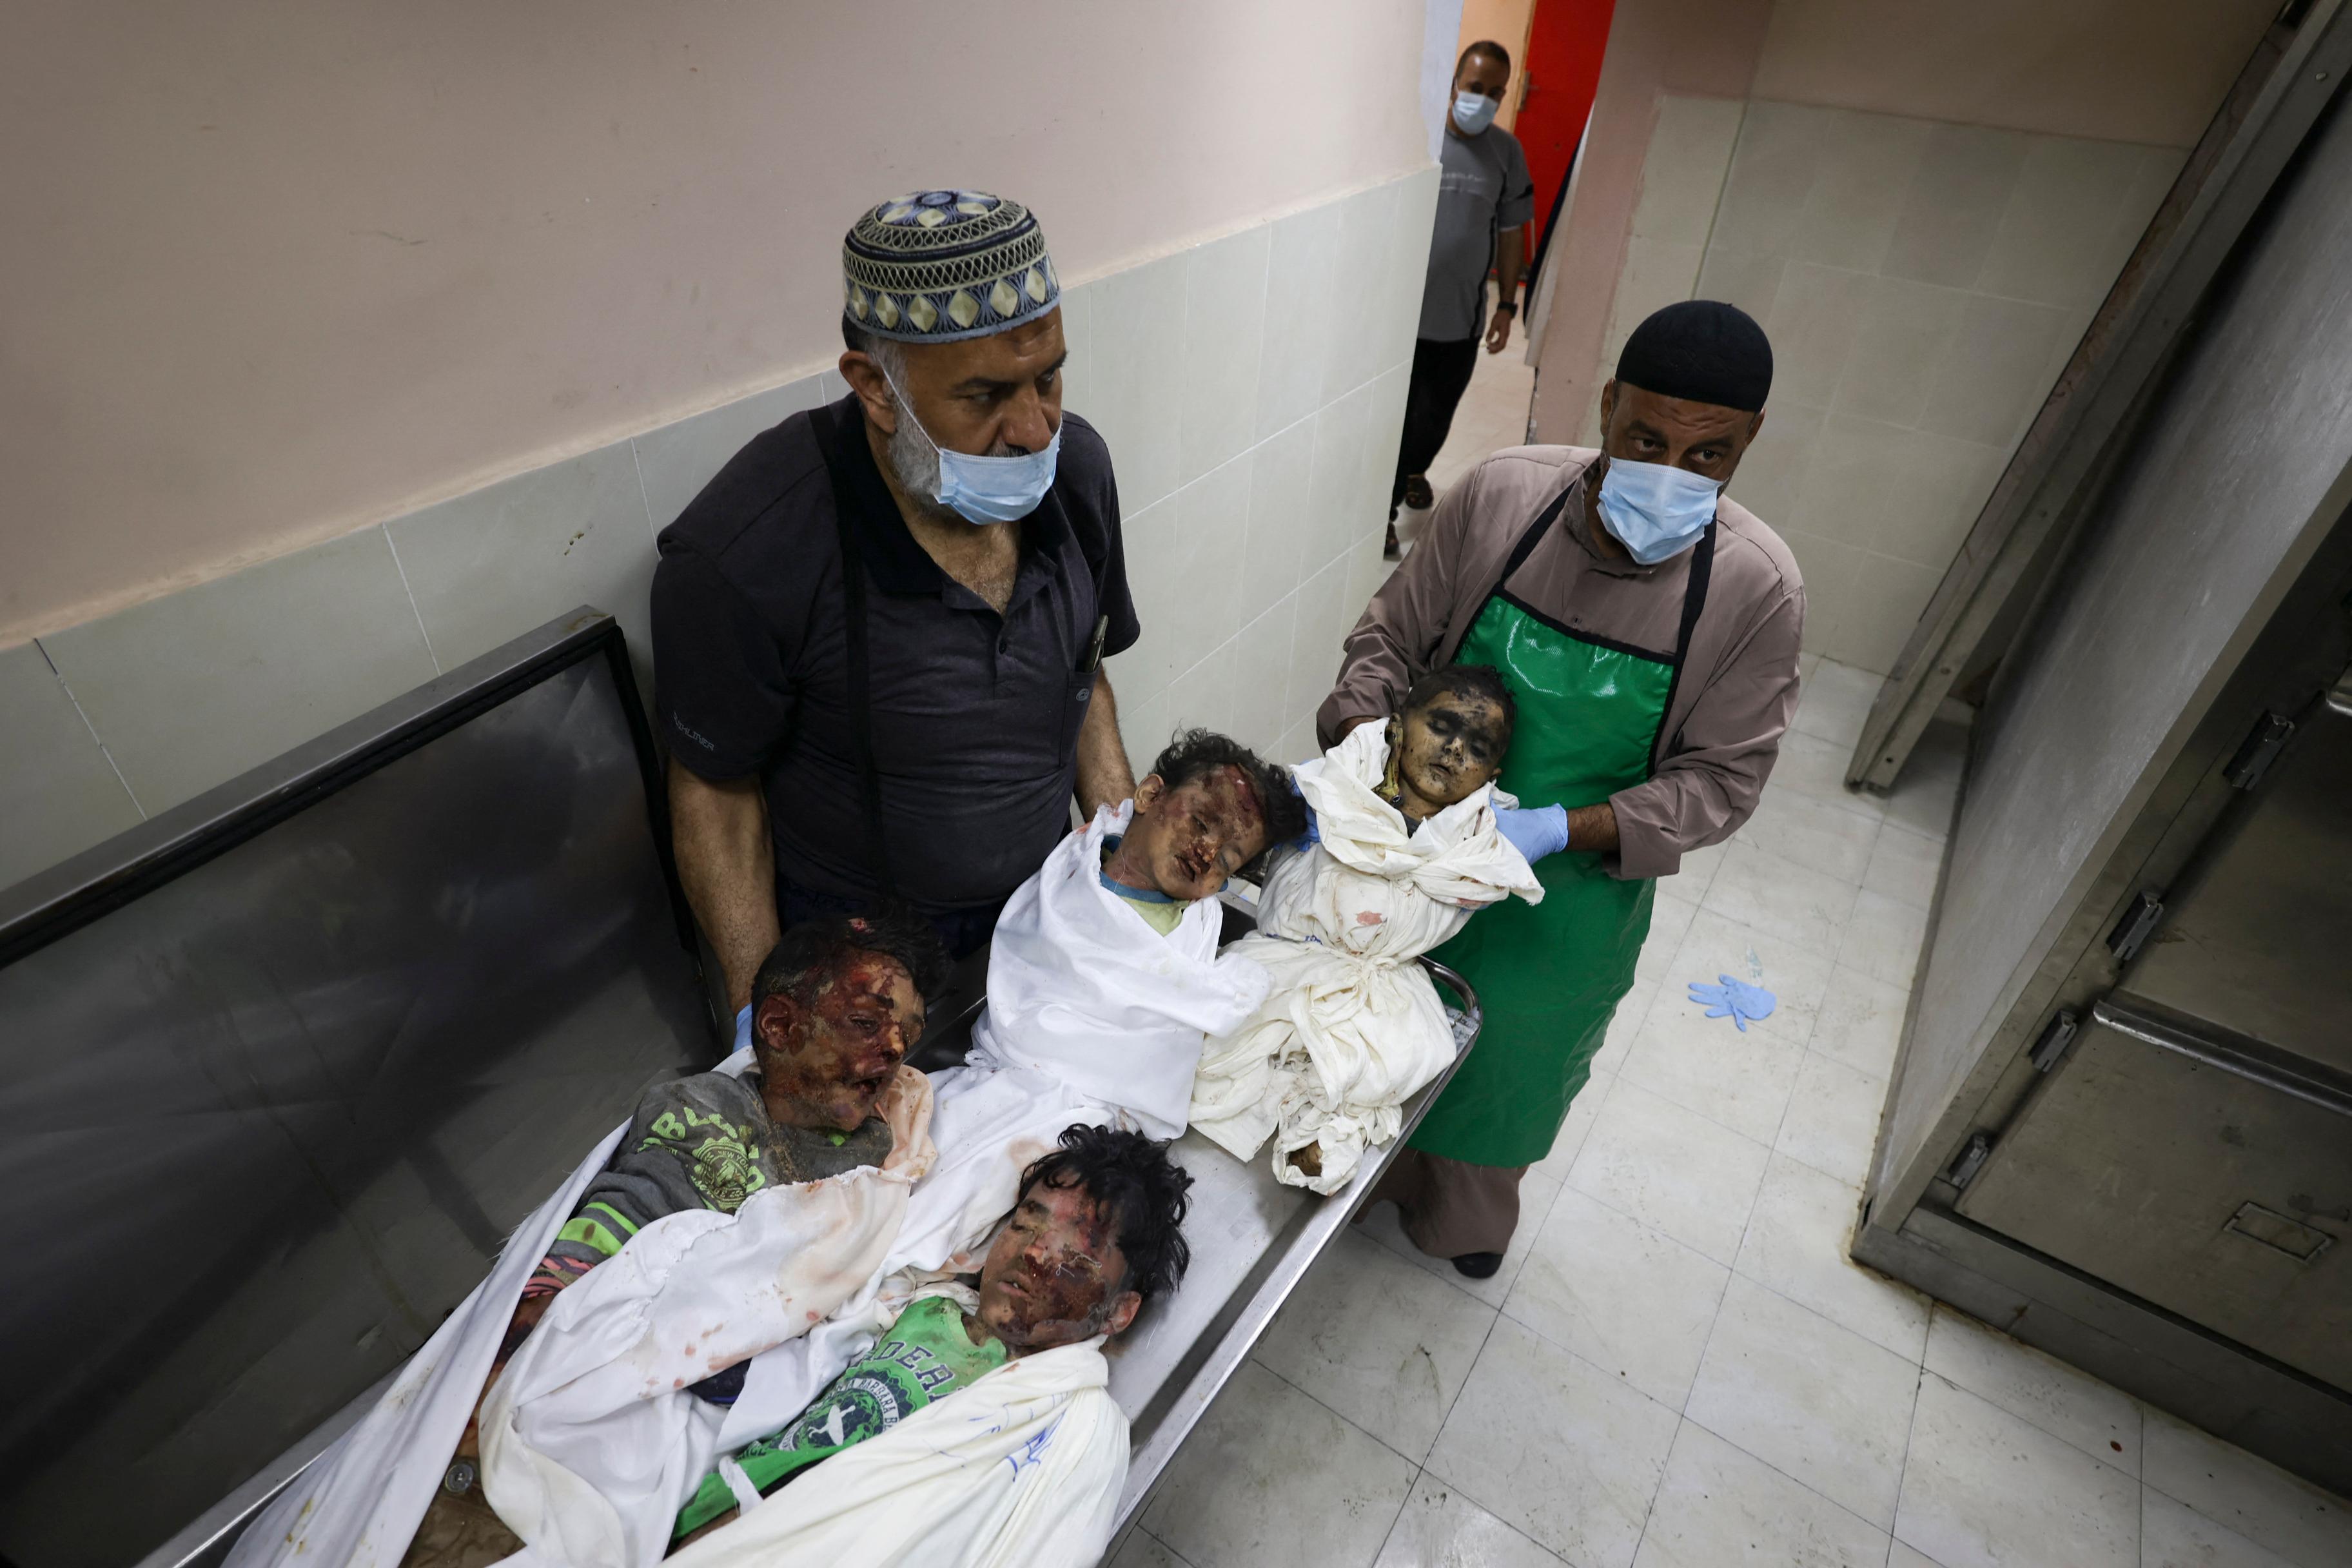 Ministarstvo zdravstva Palestine u Gazi: U napadima ubijeno 31 dijete - Avaz